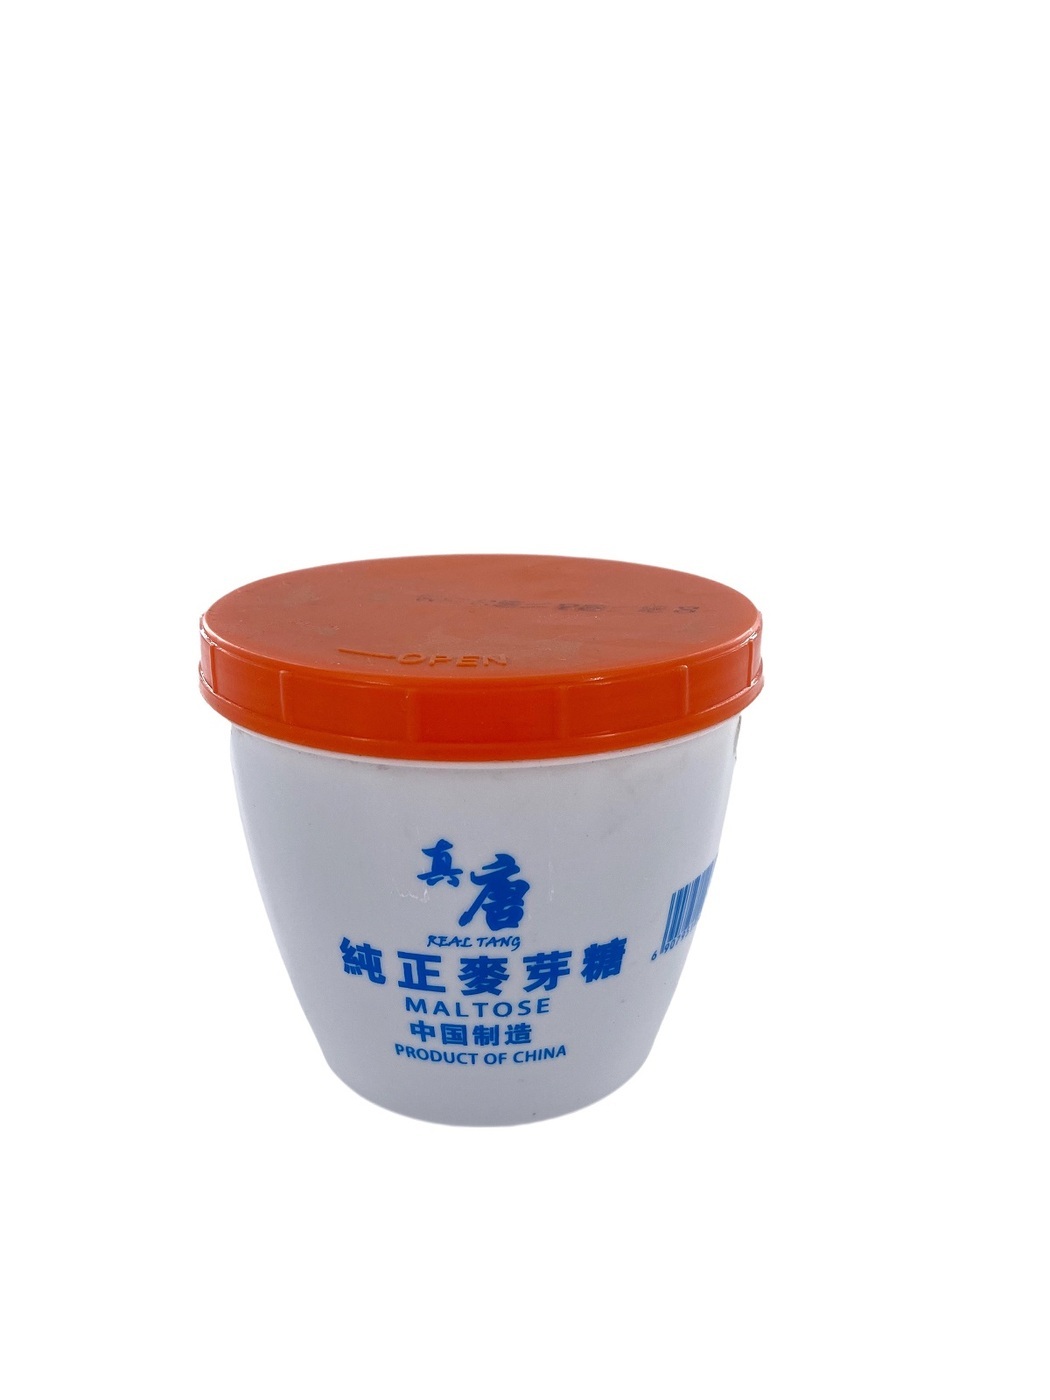 Китайский натуральный солодовый сахарный сироп (мальтоза), Real Tang, 500 гр.